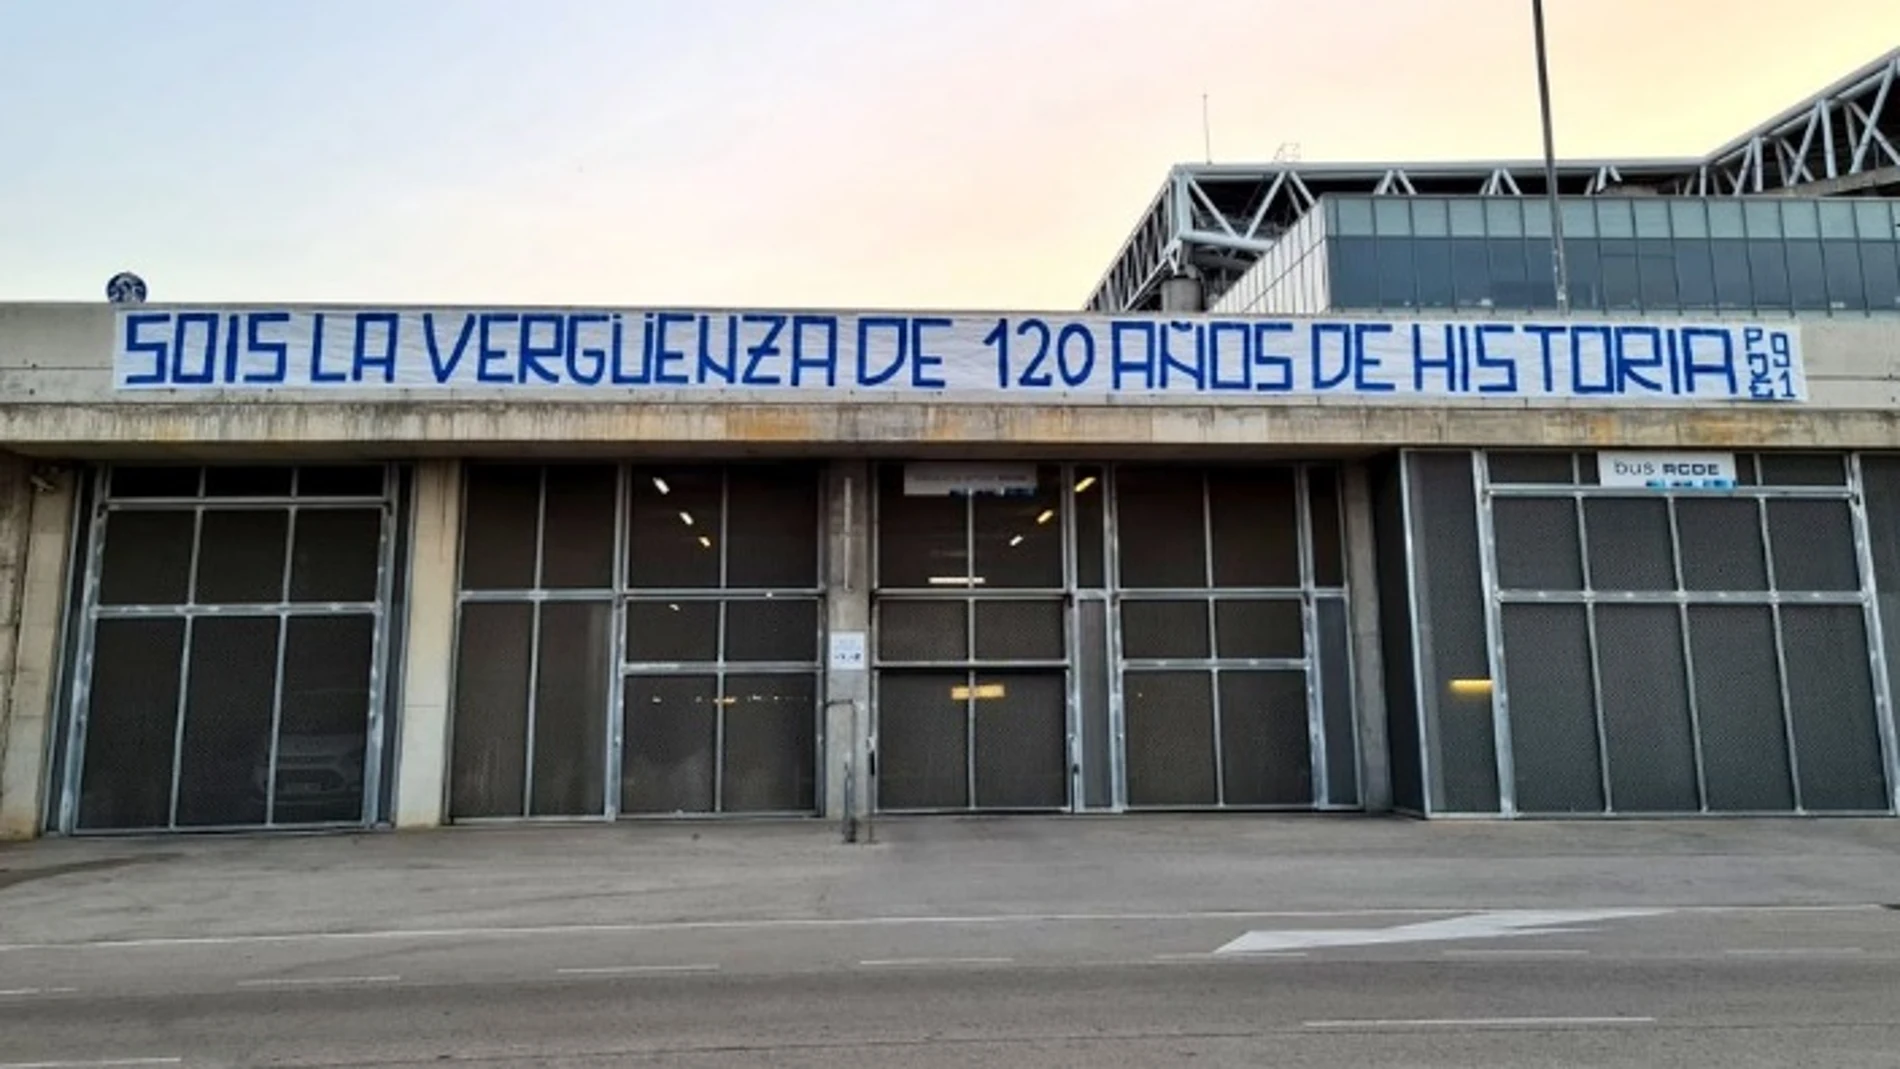 La deportiva del Espanyol amanece pancartas de "vergüenza" tras el descenso a Segunda